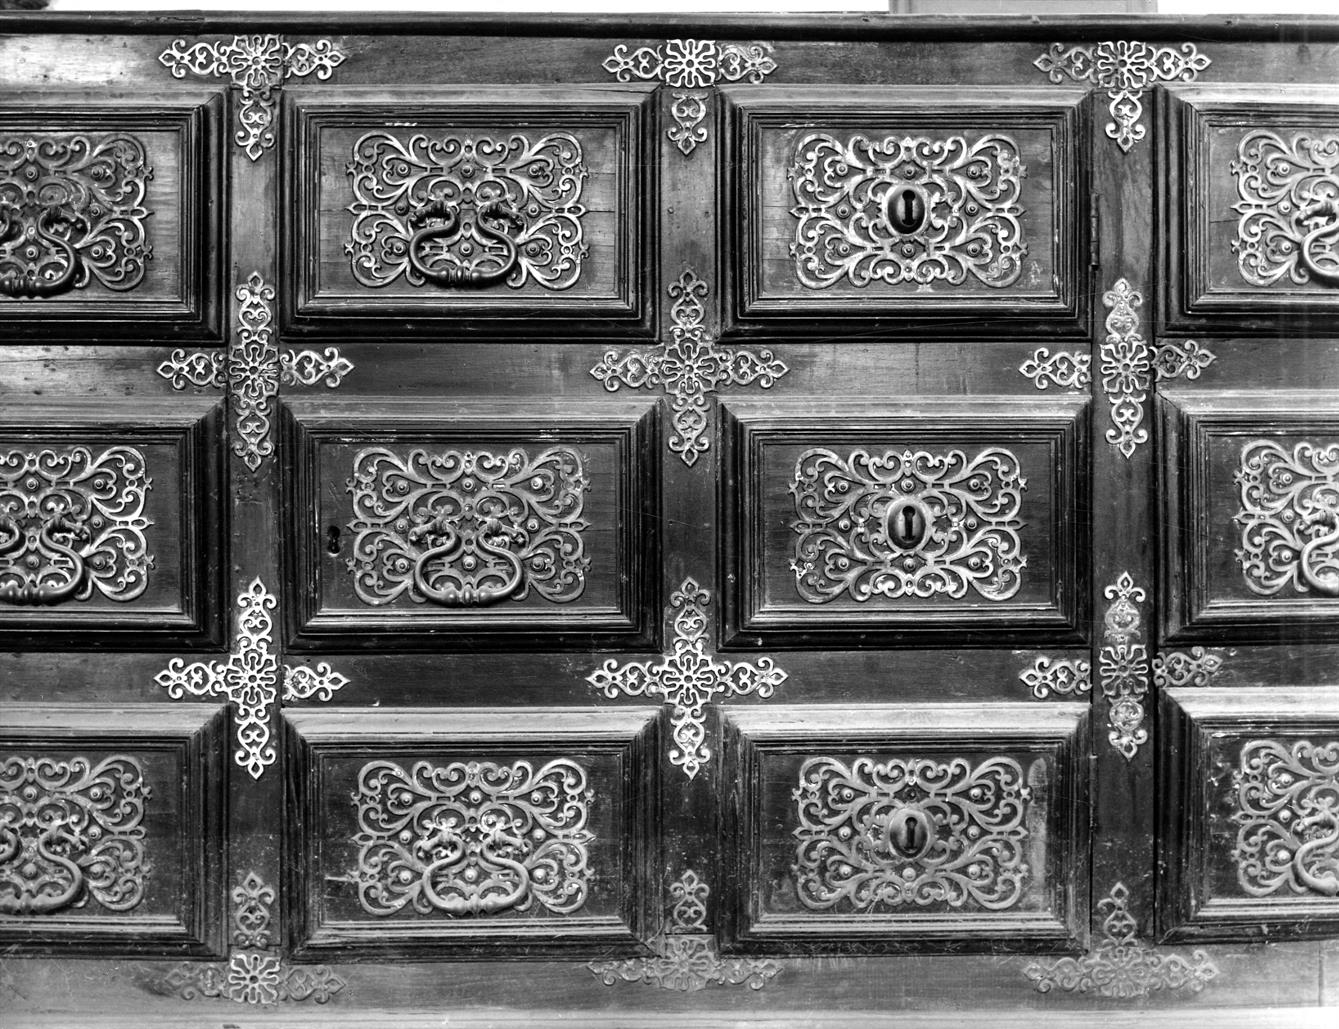 Os arcazes e armários da sacristia da Sé do Porto : Cabeceiras de Basto : sacristia de S. Miguel de Refojos : pormenor de um arcaz